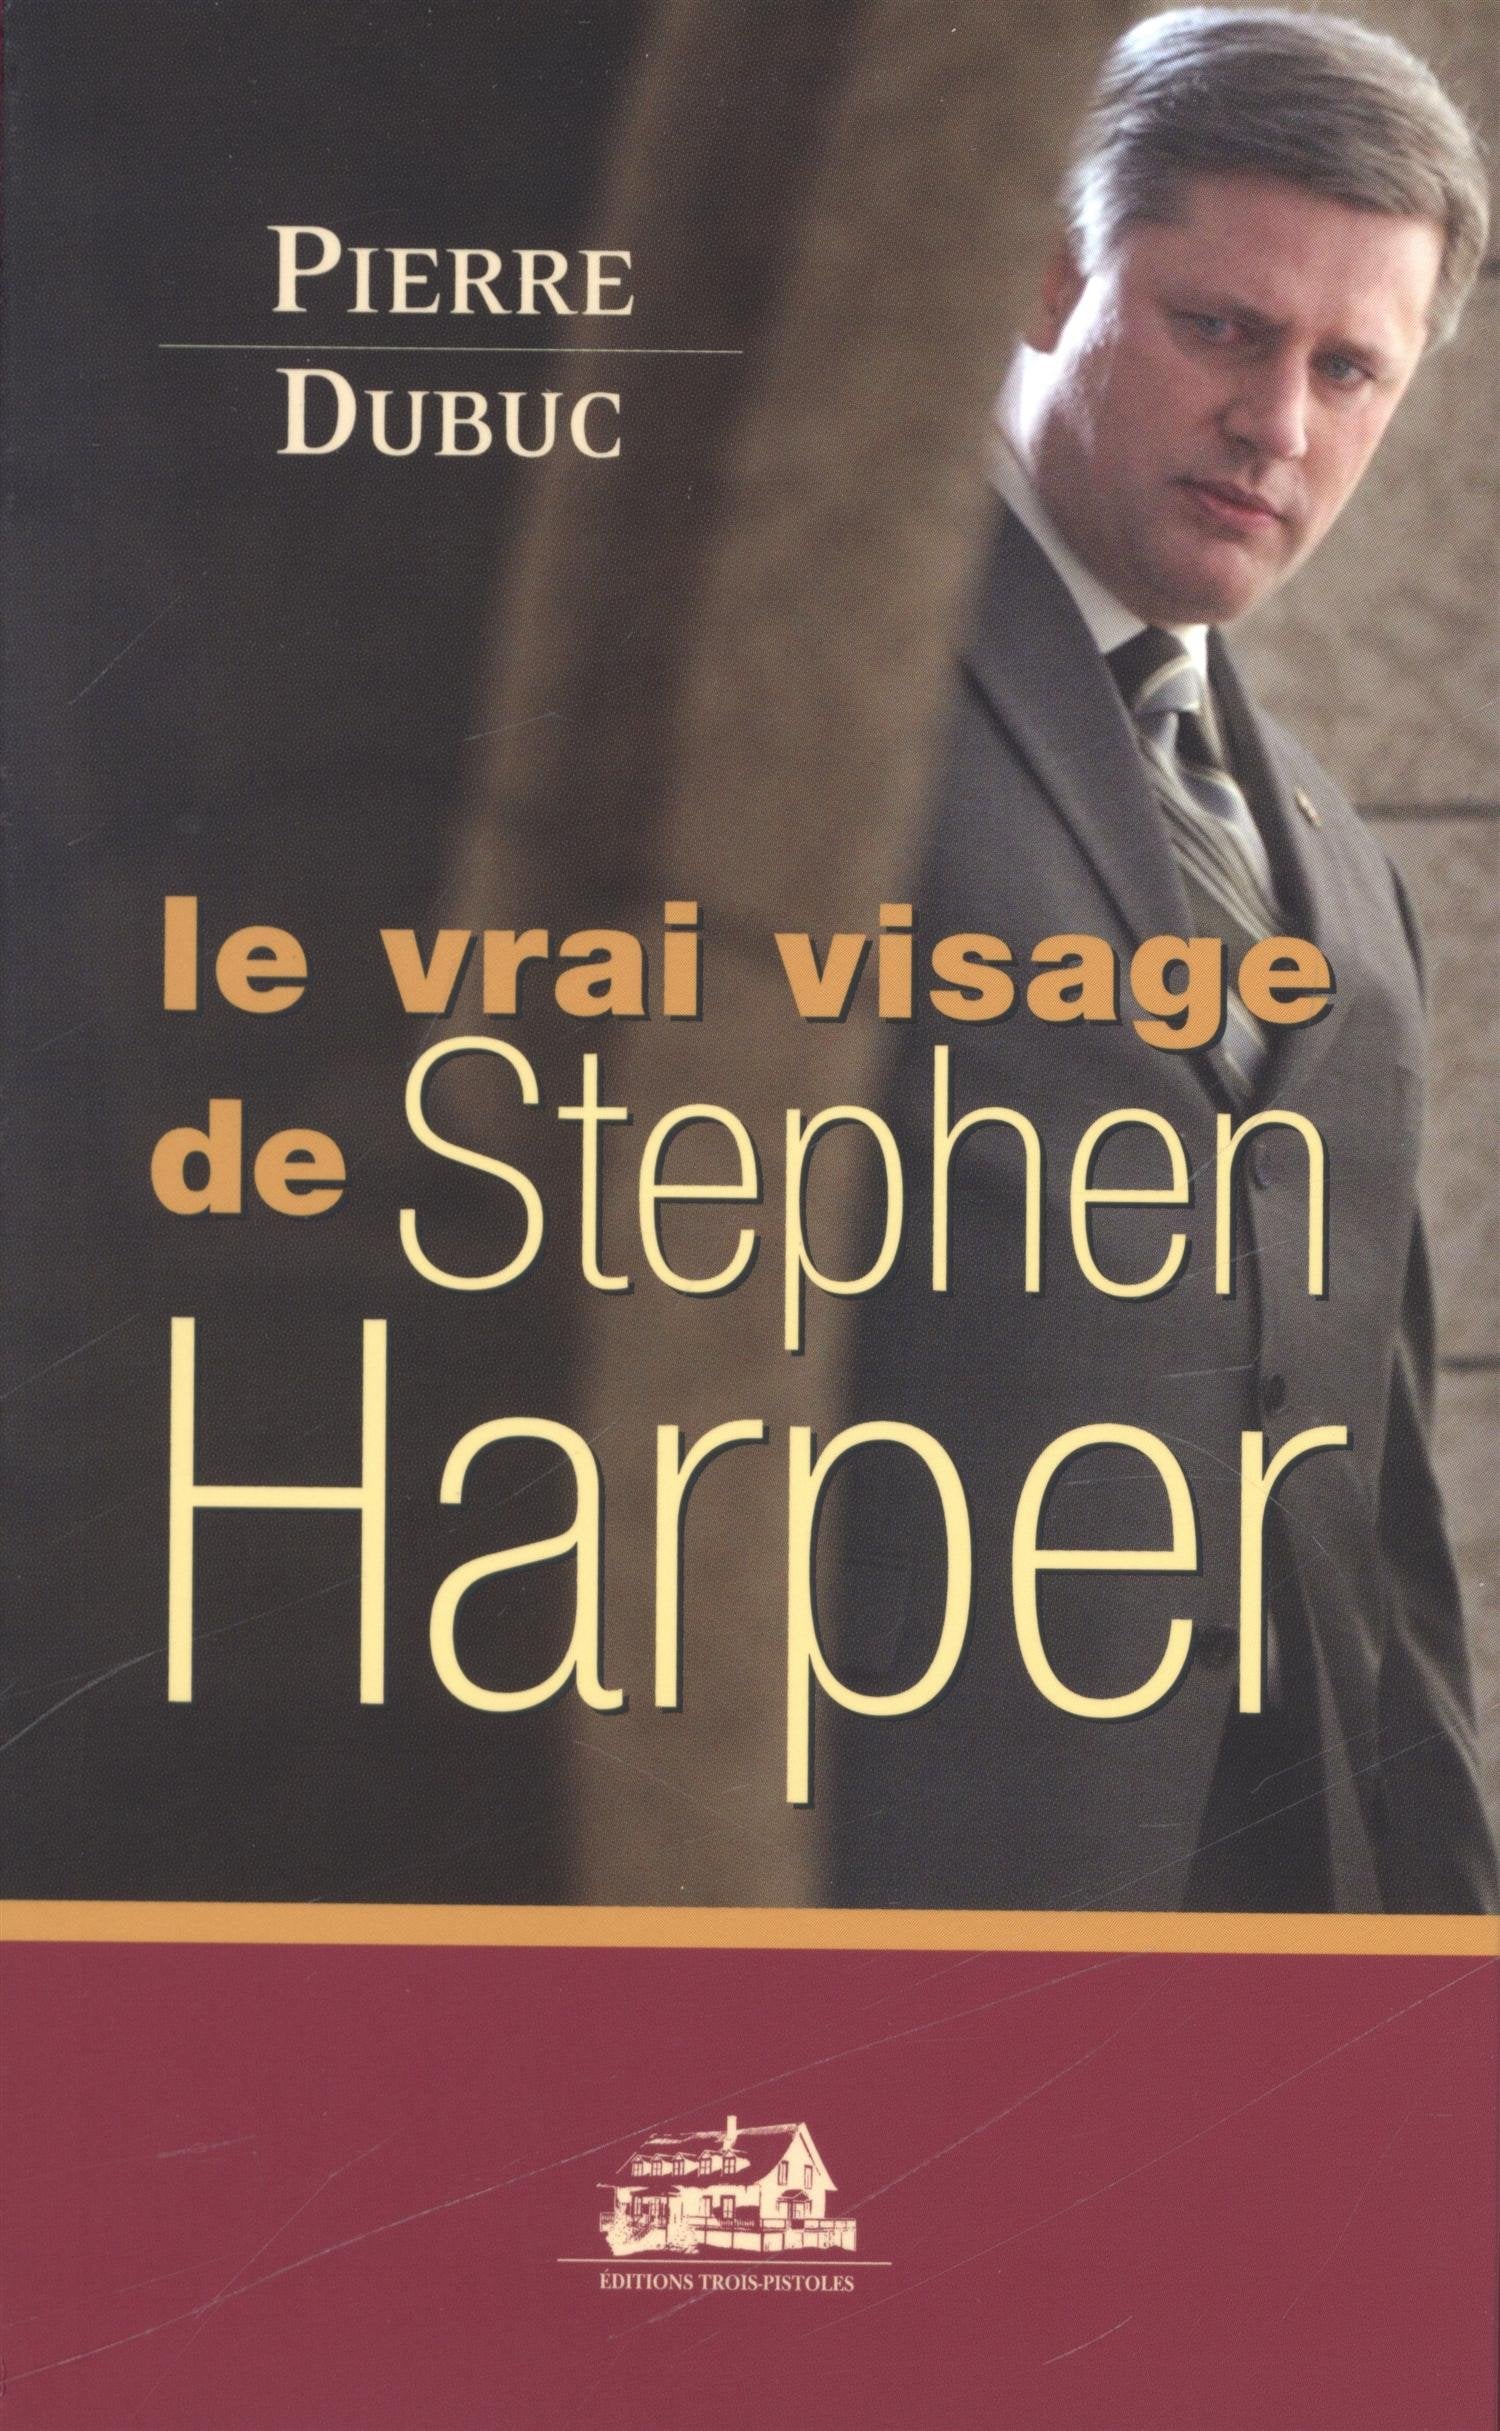 Livre ISBN 2895831378 Le vrai visage de Stephen Harper (Pierre Dubuc)